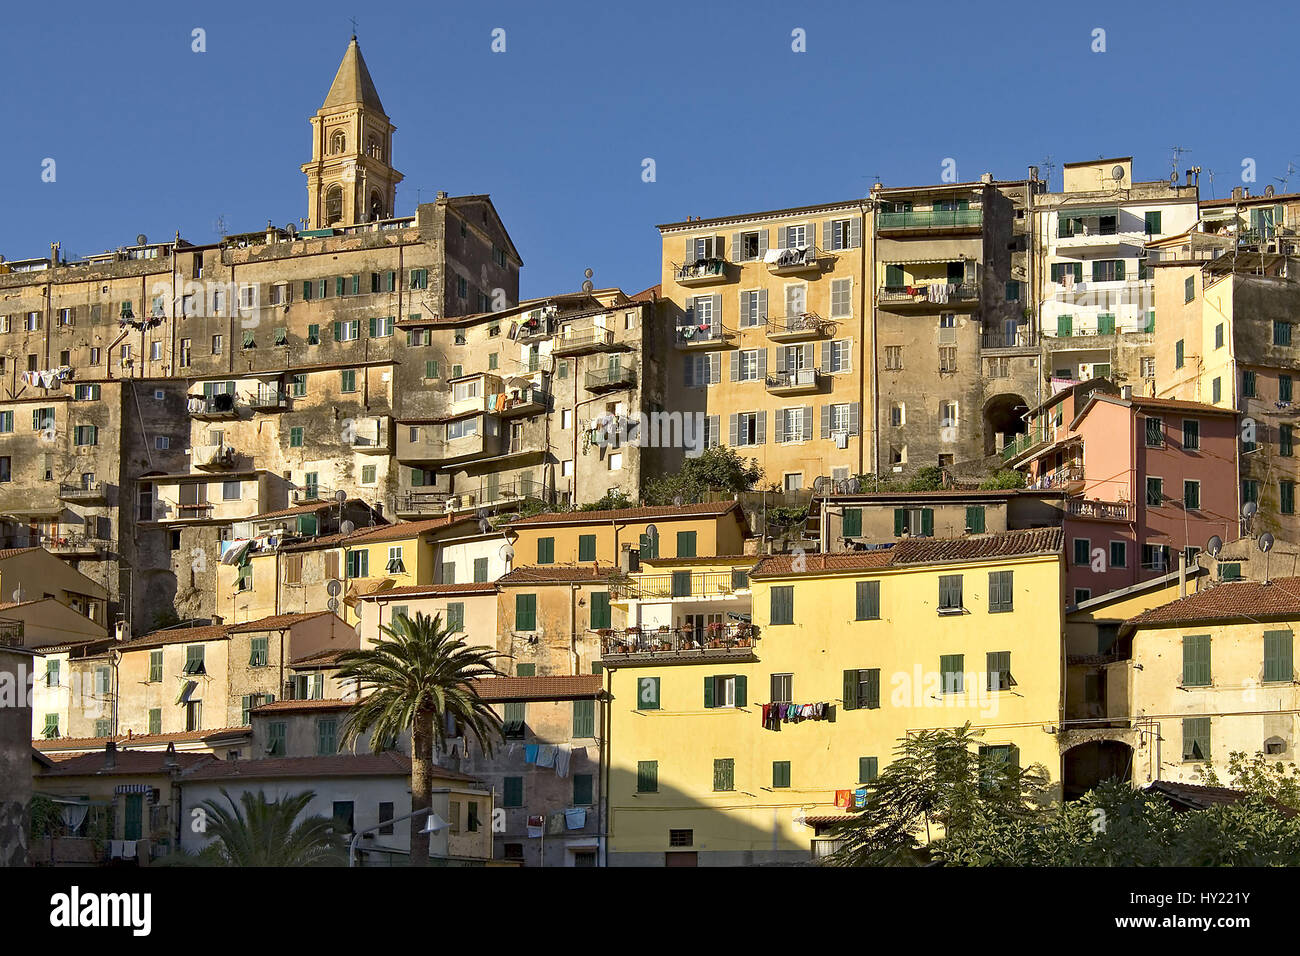 Die Altstadt von Ventimiglia in Ligurien, Italien. Der mittelalterliche Ort erhebt sich Ã¼ber dem Fluss Roia auf einem Huegel, auf dem Reste der alten Stock Photo